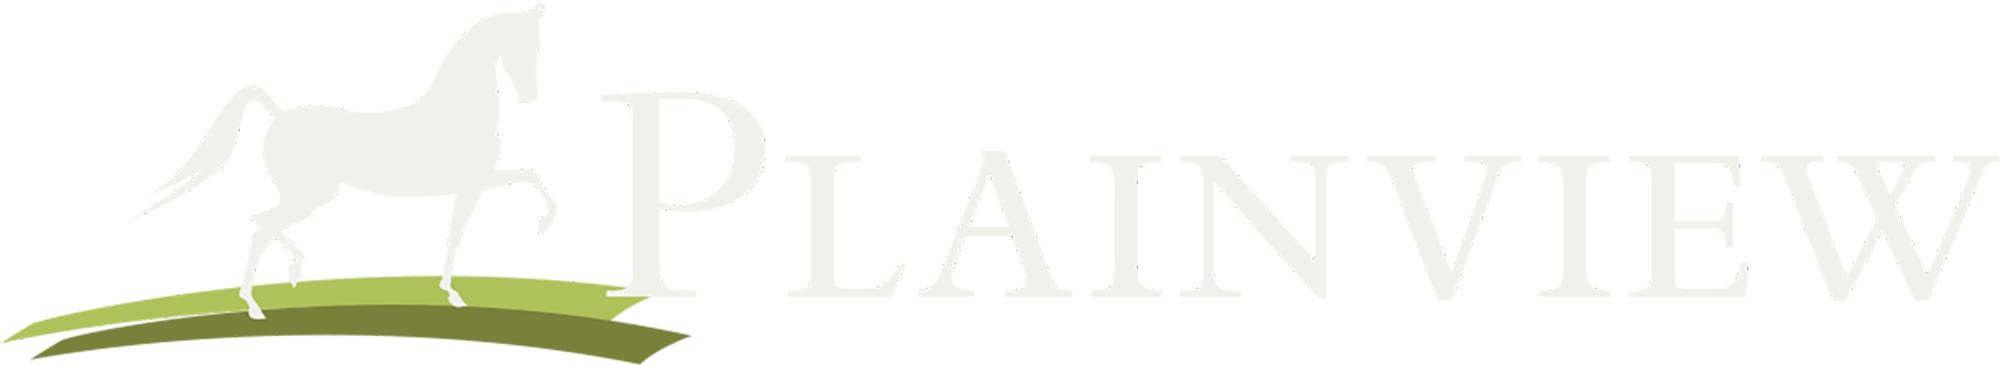 Plainview Apartments Logo